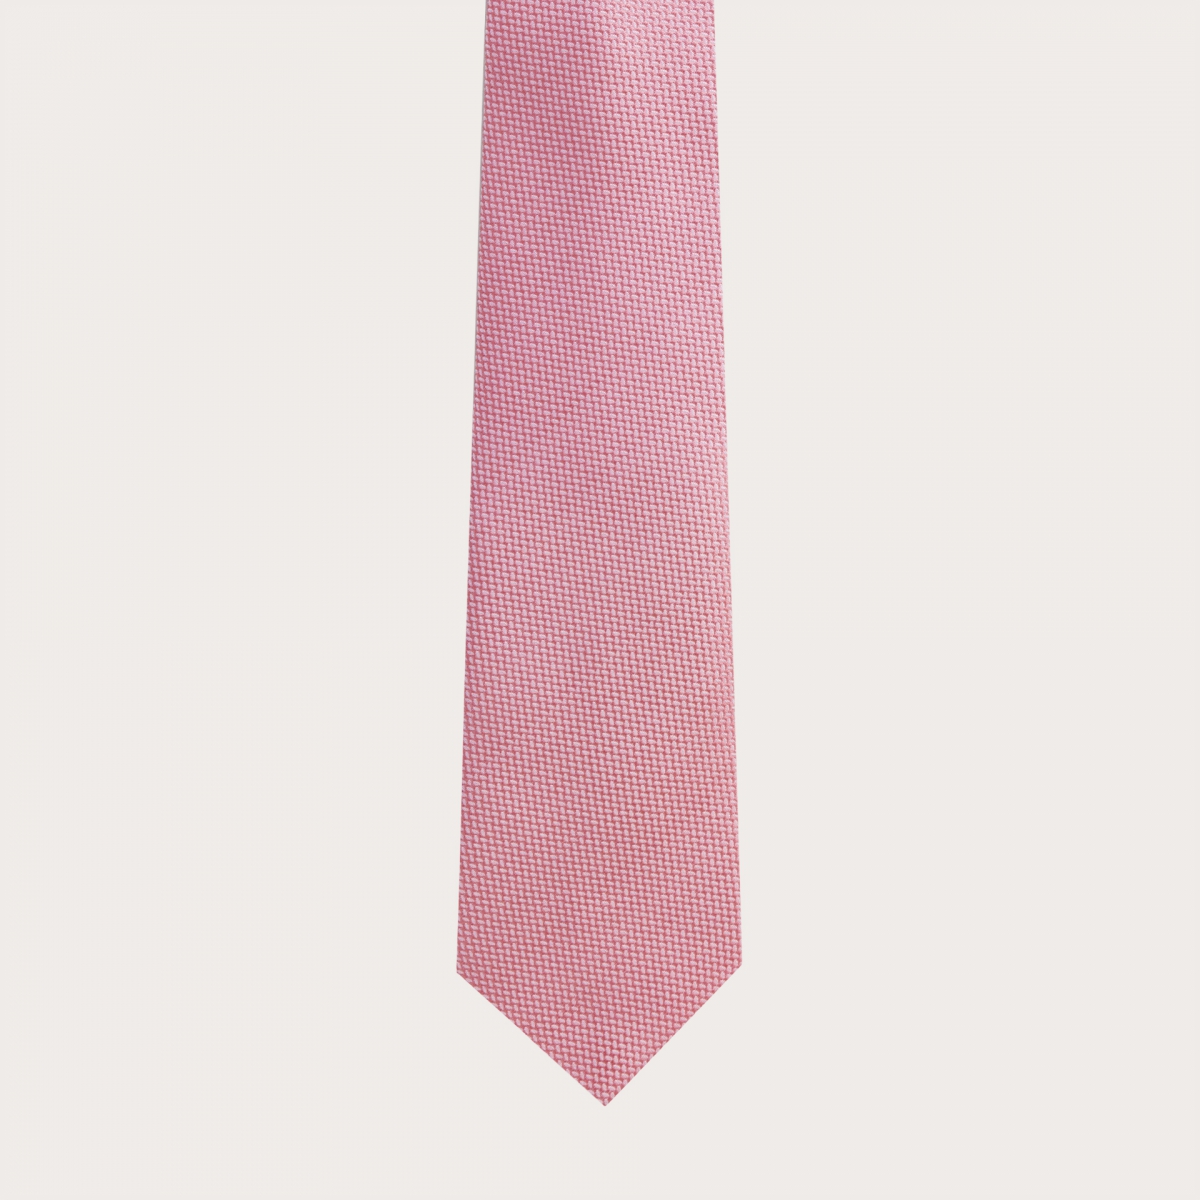 Necktie in jacquard silk, pink